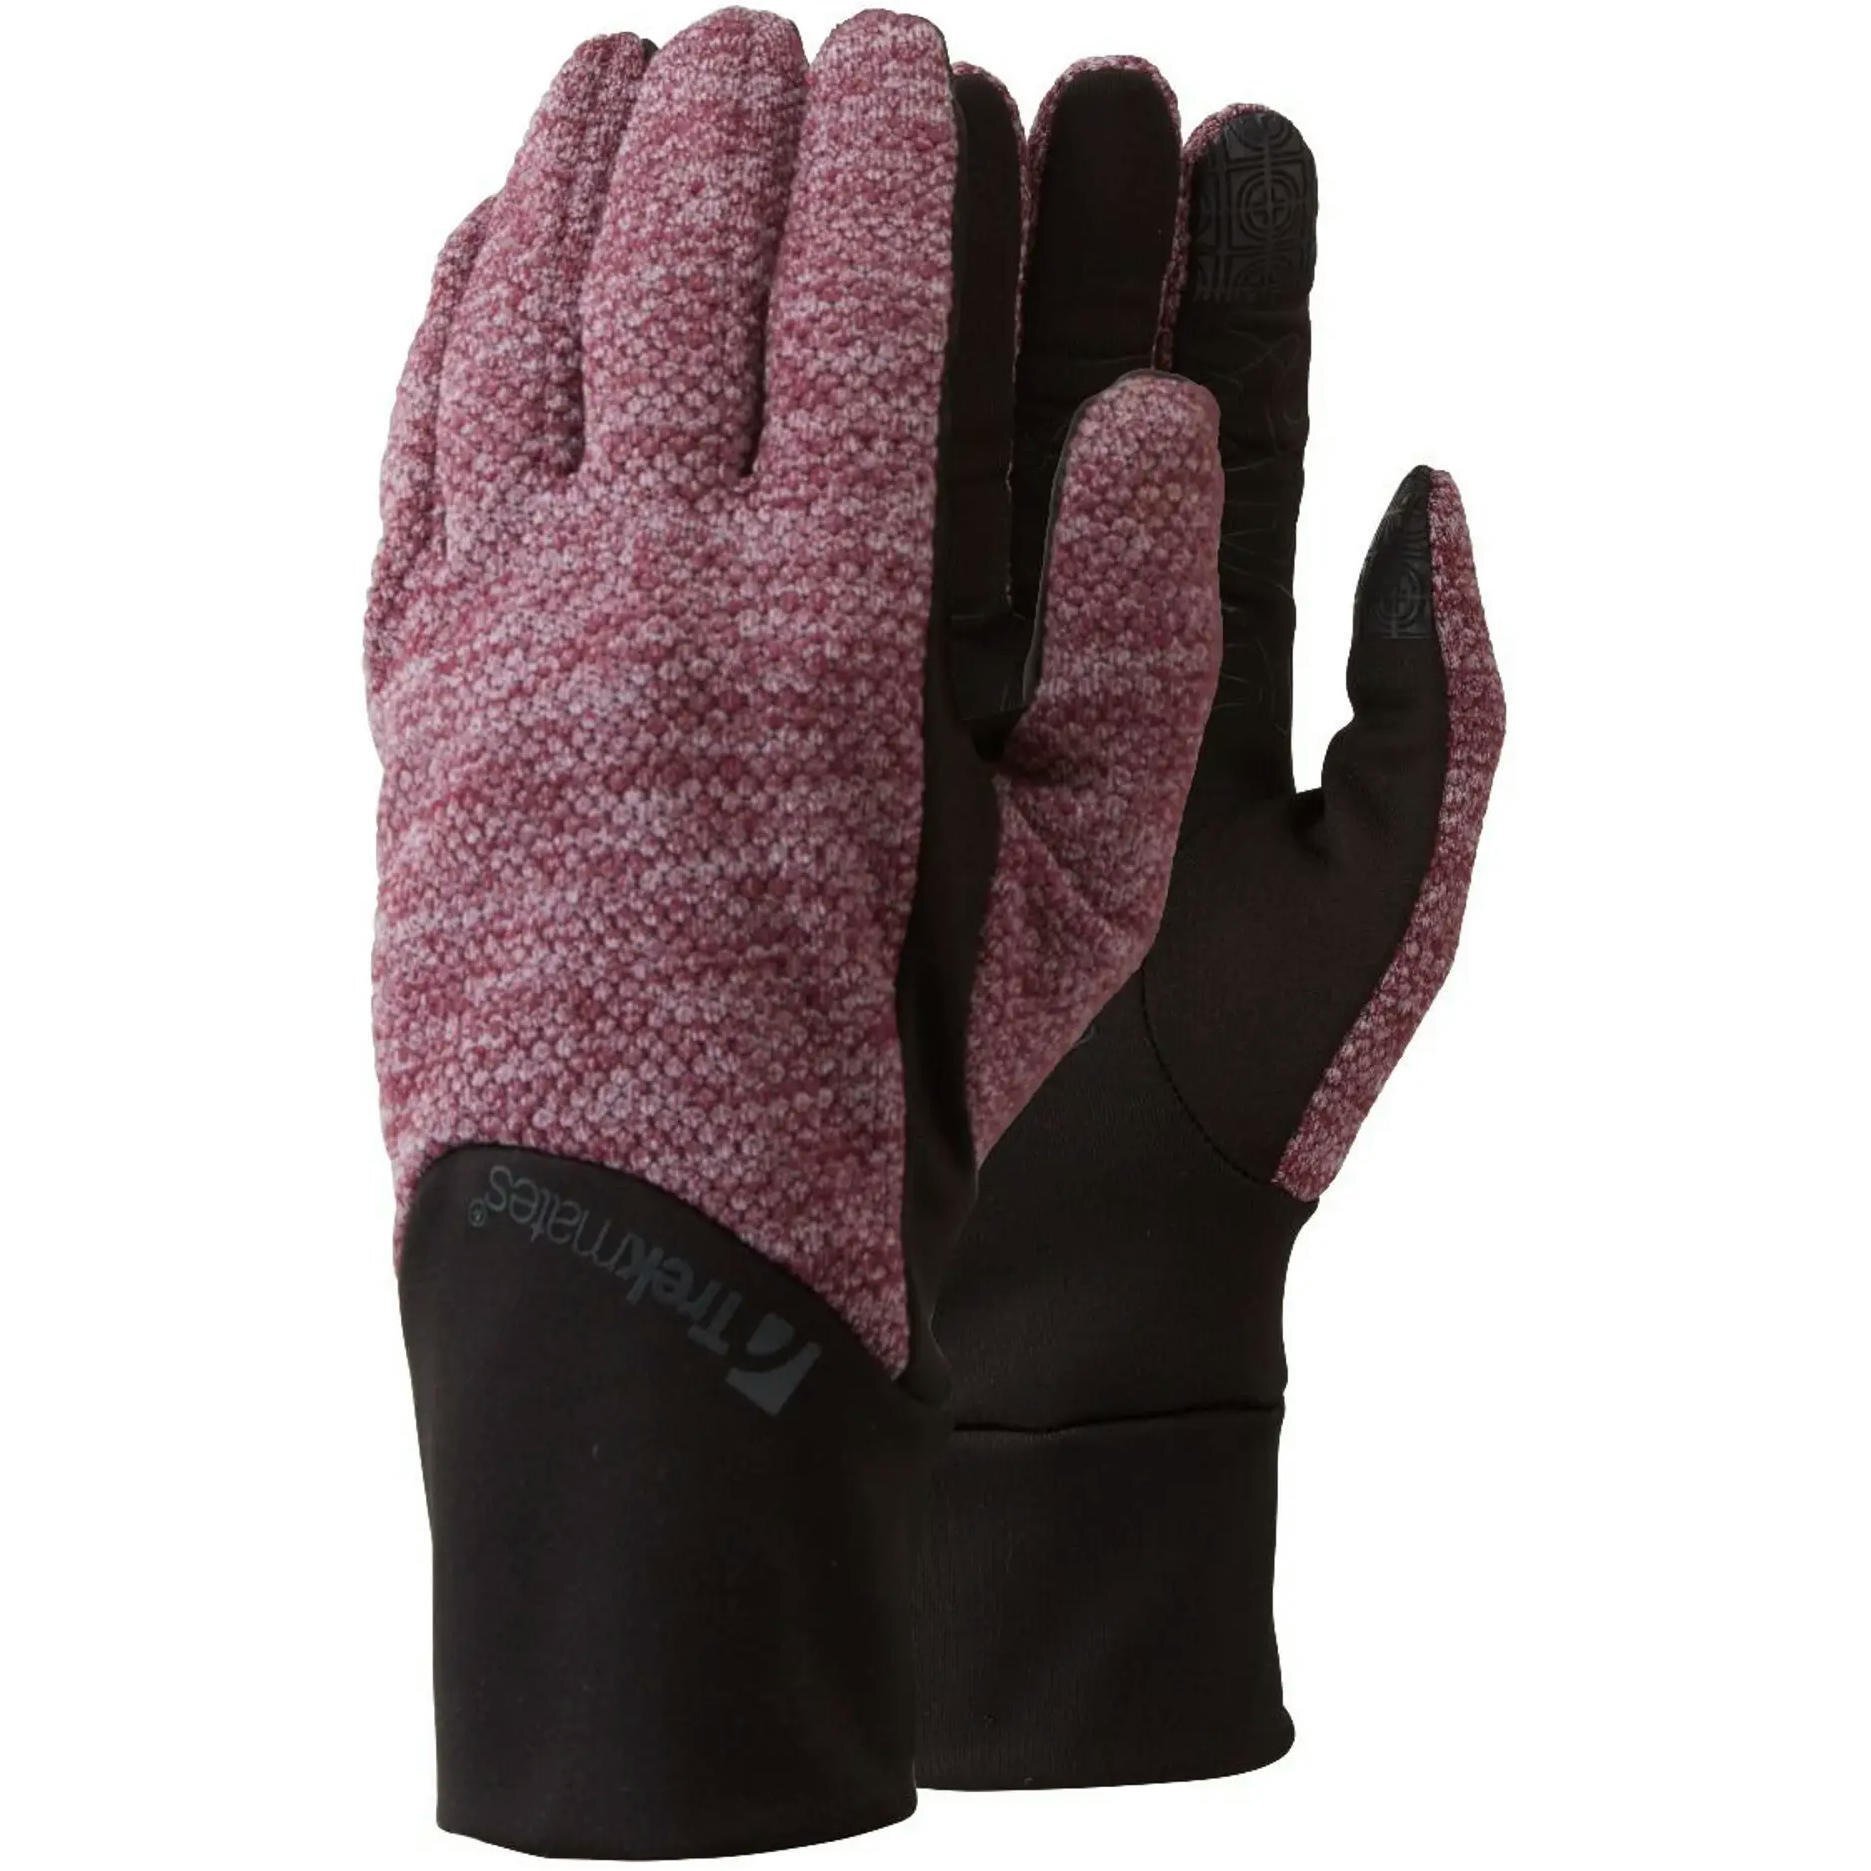 Перчатки Trekmates Harland Glove TM-006305 aubergine - L - фиолетовый/черный фото 1